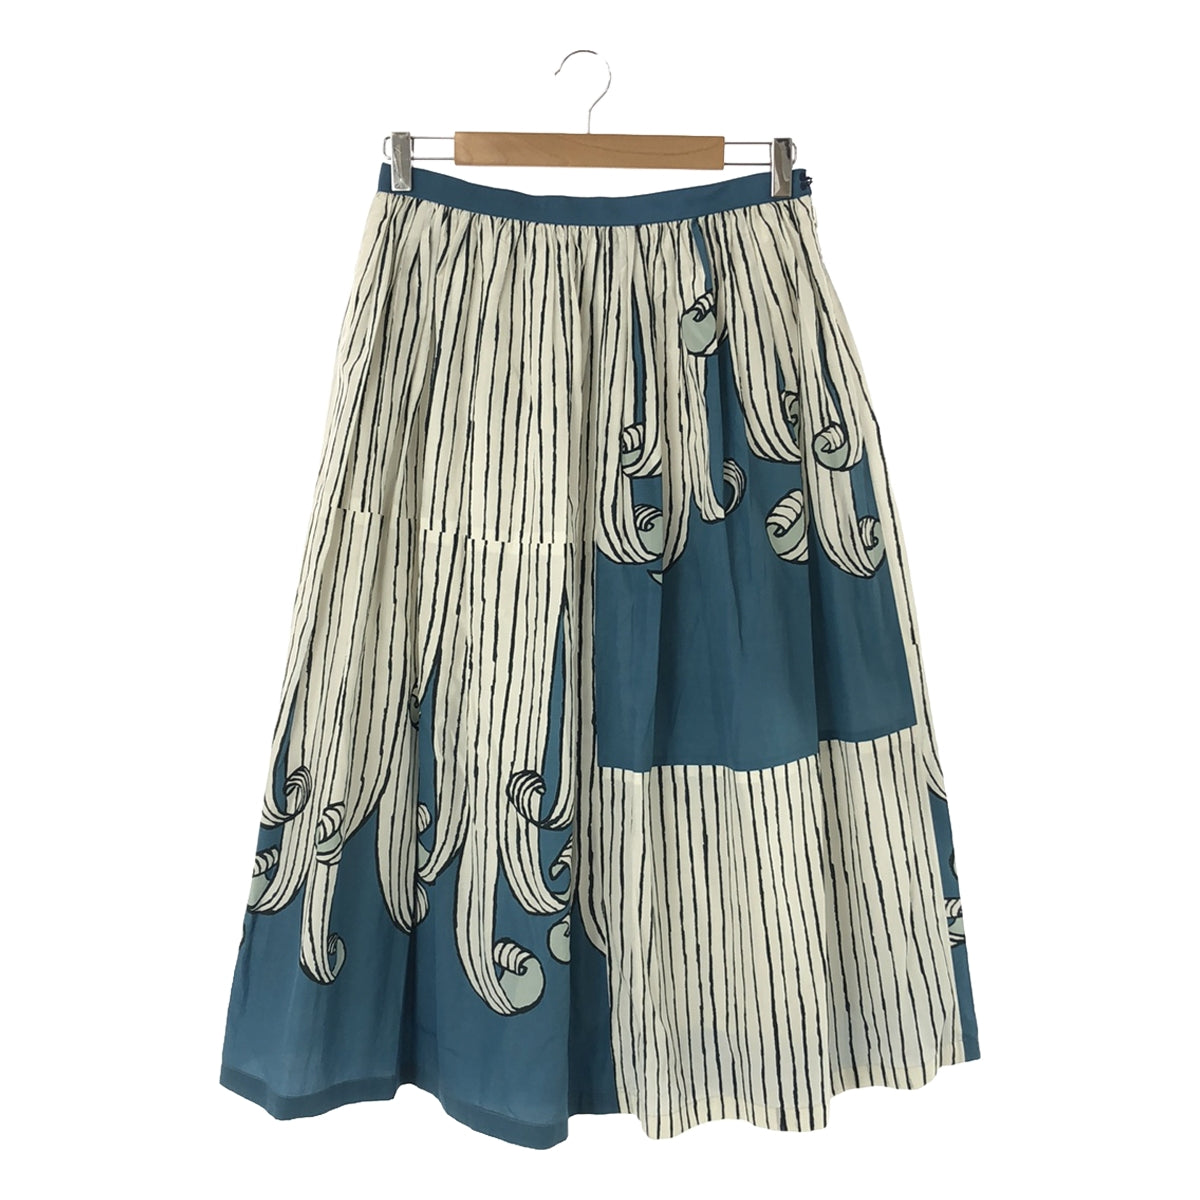 超歓迎 スカート ミナペルホネン pop レア 稀小 rain スカート 